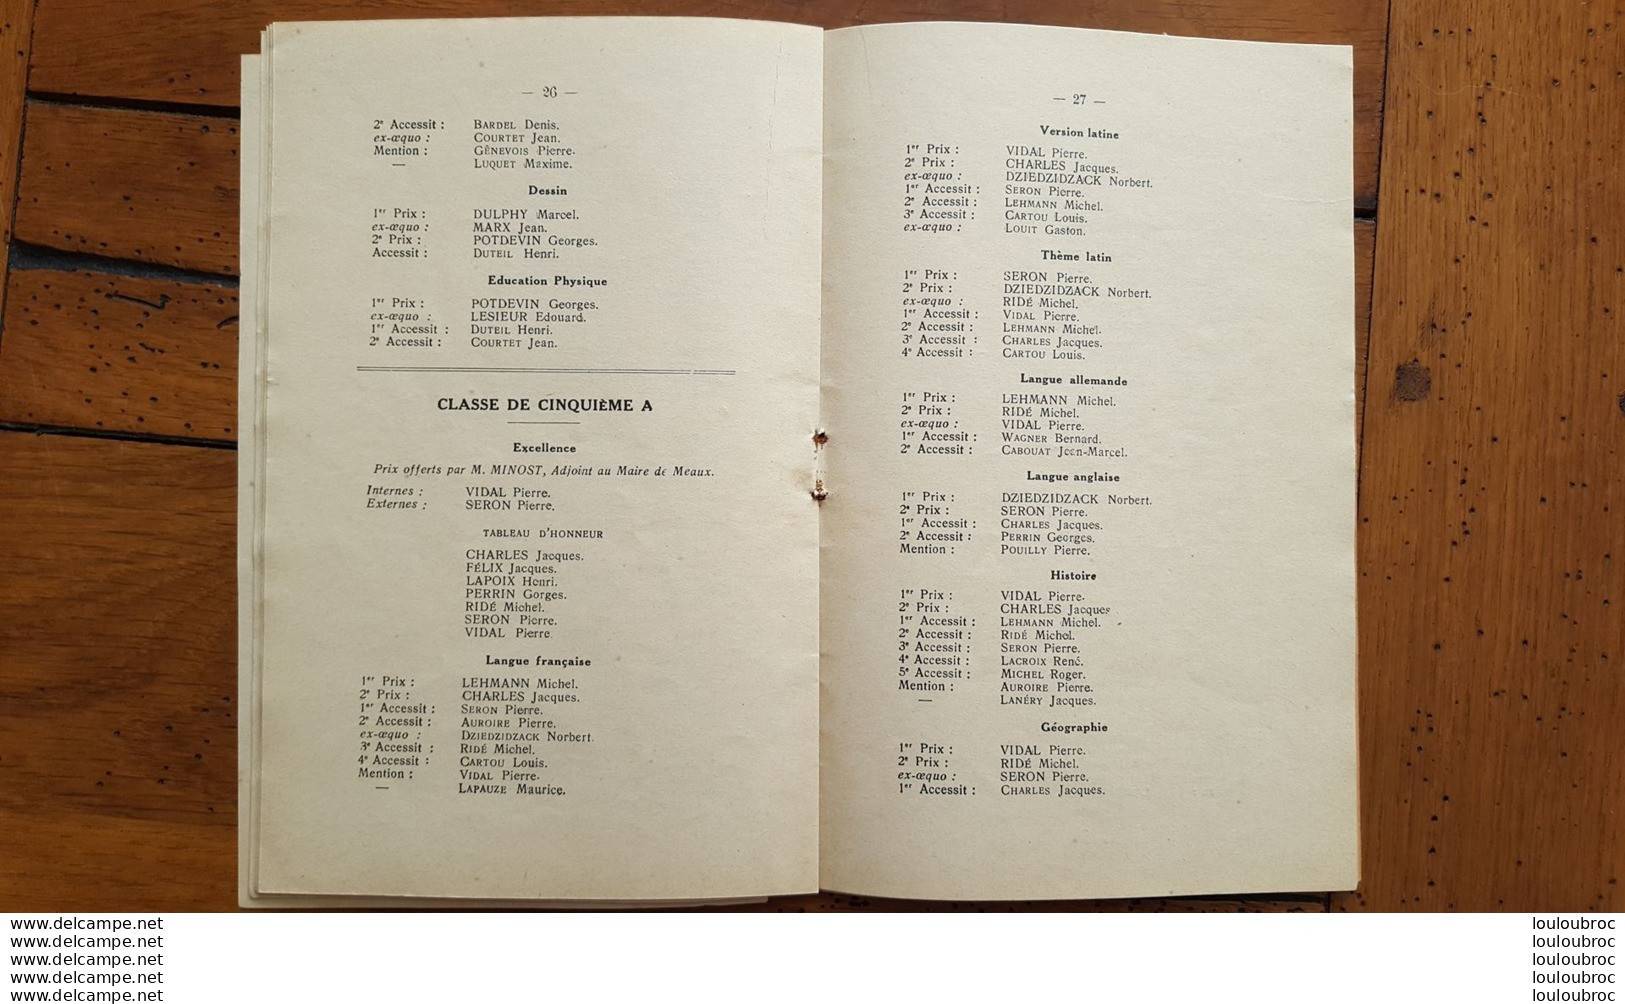 COLLEGE DE MEAUX DISTRIBUTION SOLENNELLE DES PRIX 1936 LIVRET DE 47 PAGES AVEC TOUS LES NOMS - Historical Documents